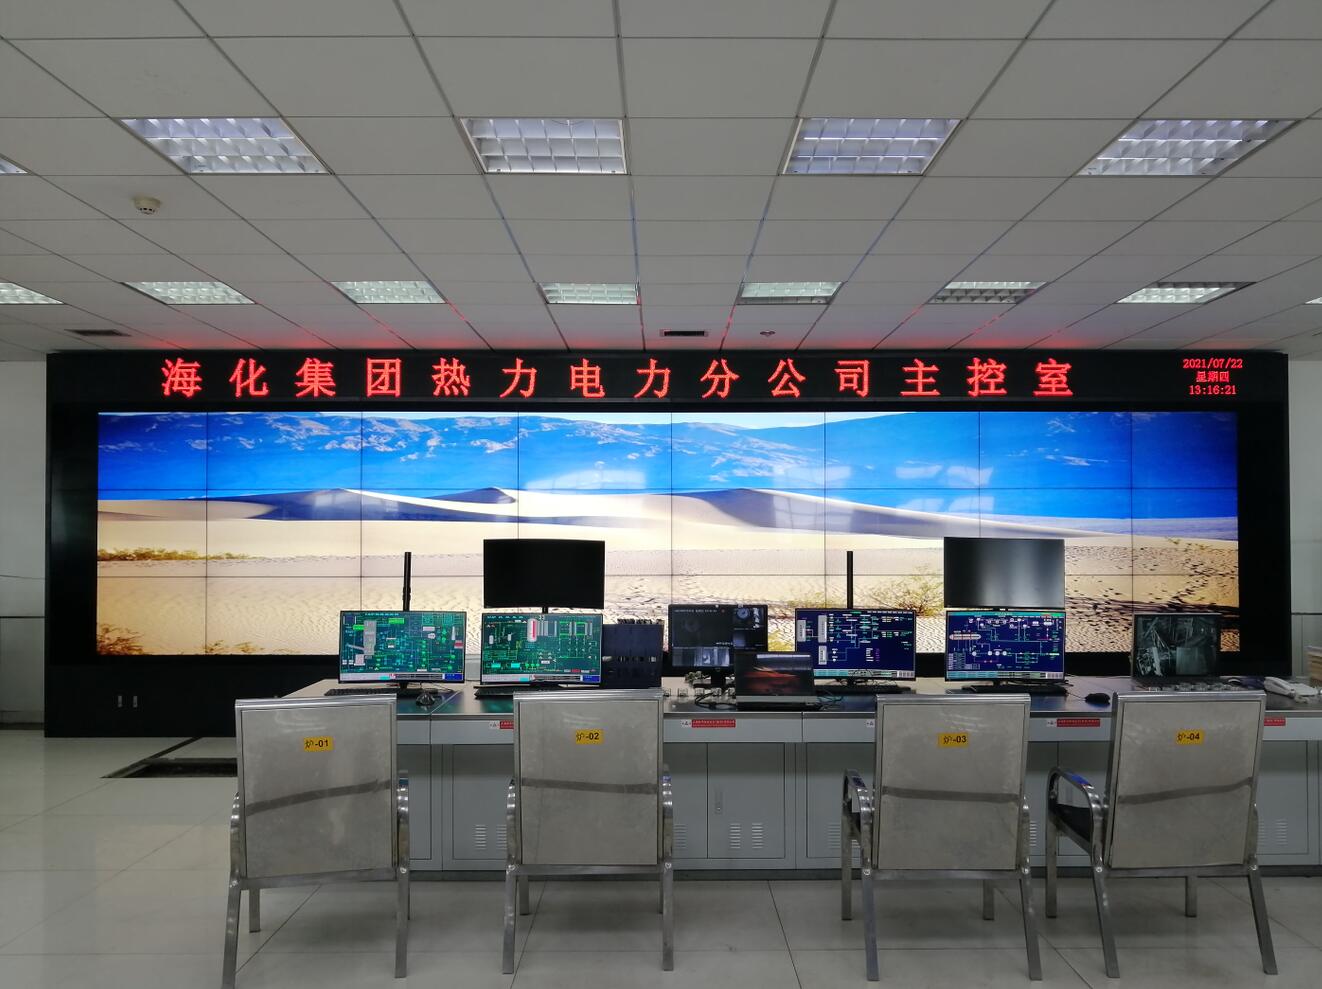 山东潍坊海化集团热力电力分公司24块液晶拼接大屏完工